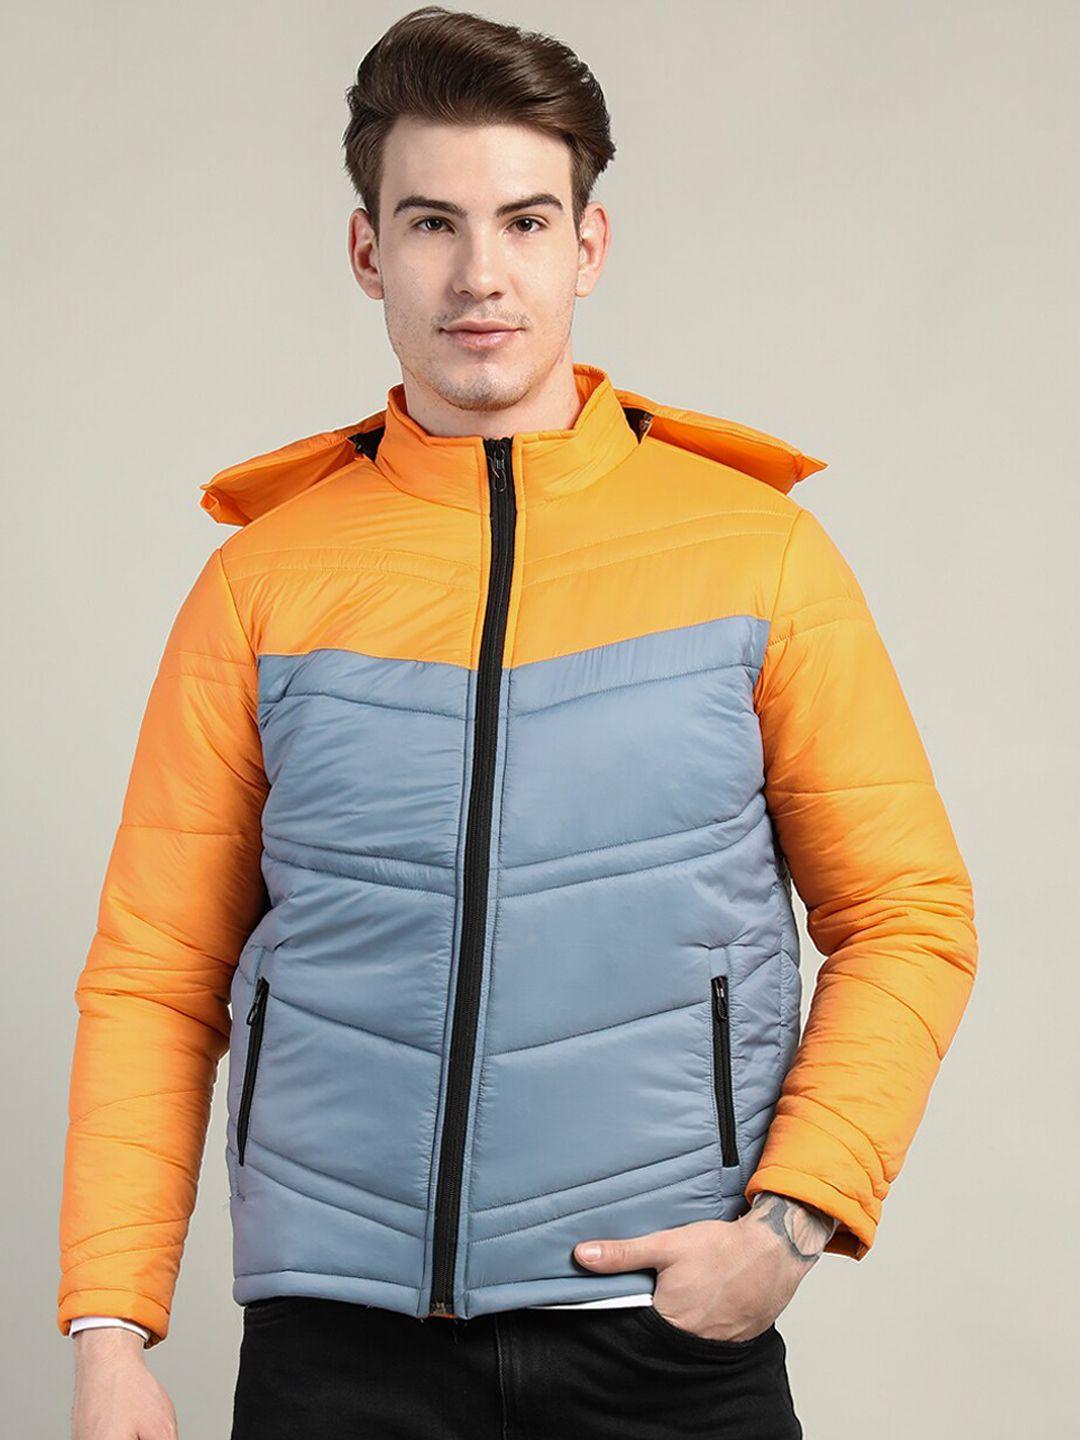 chkokko men orange & blue colourblocked outdoor puffer jacket